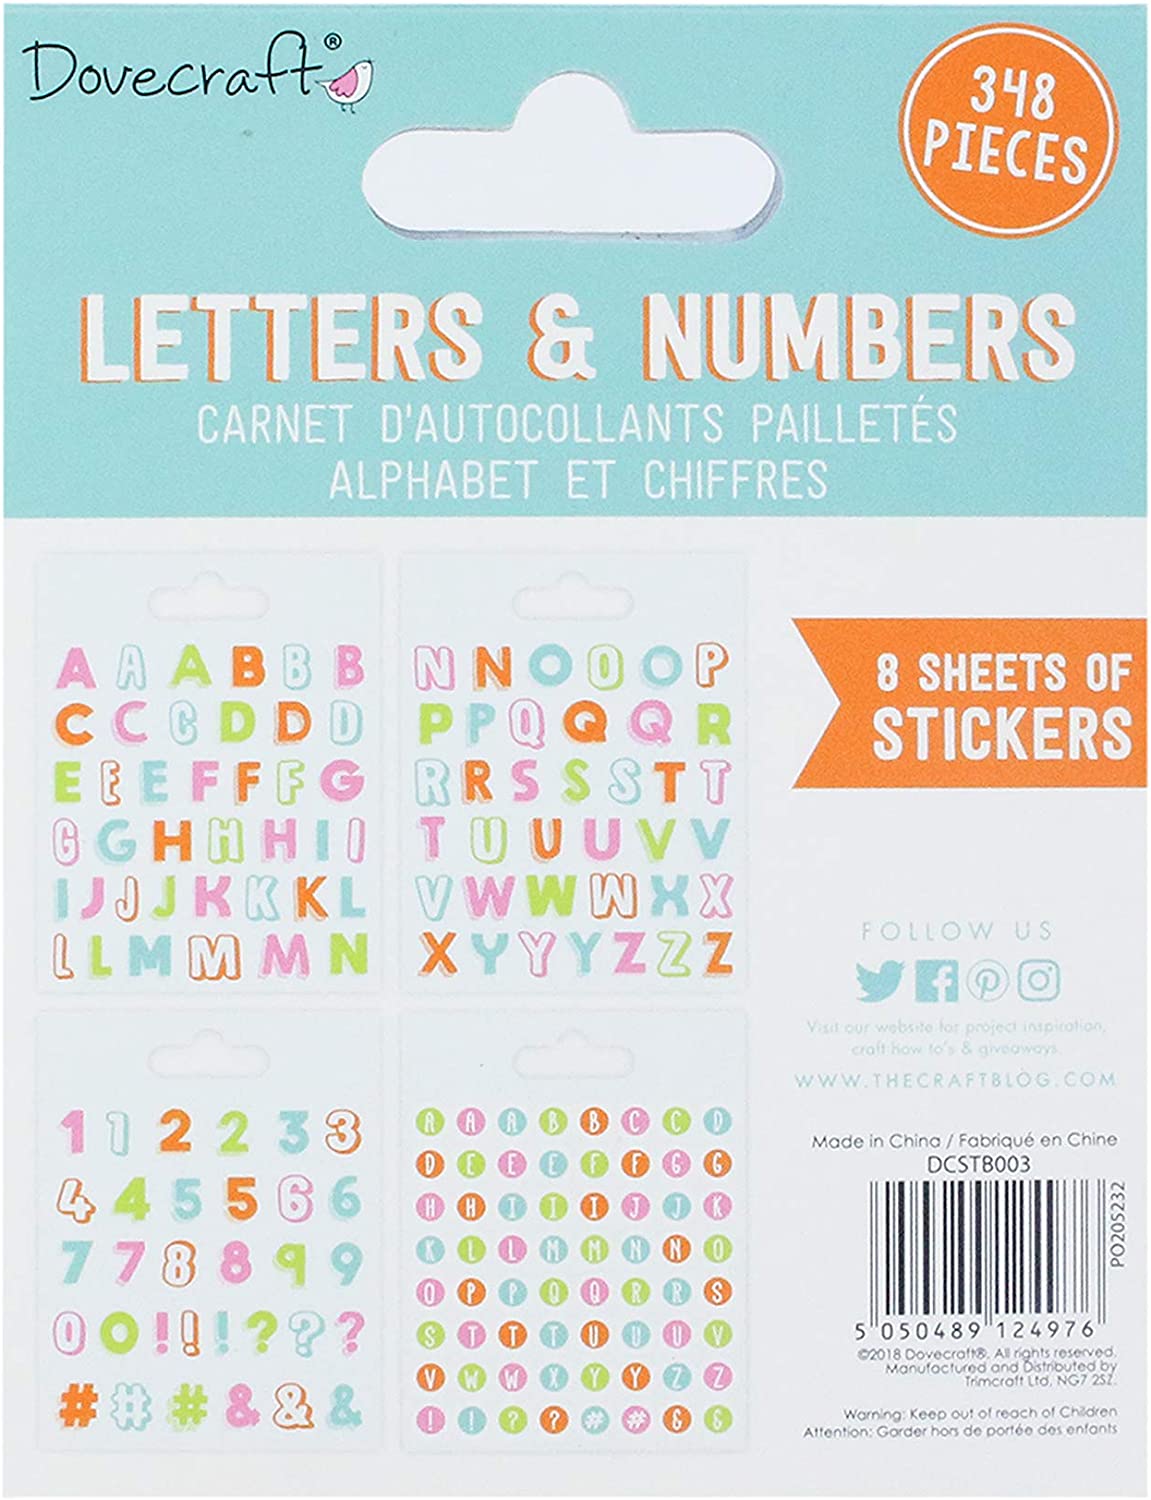 Dovecraft Sticker Book - Alphabet